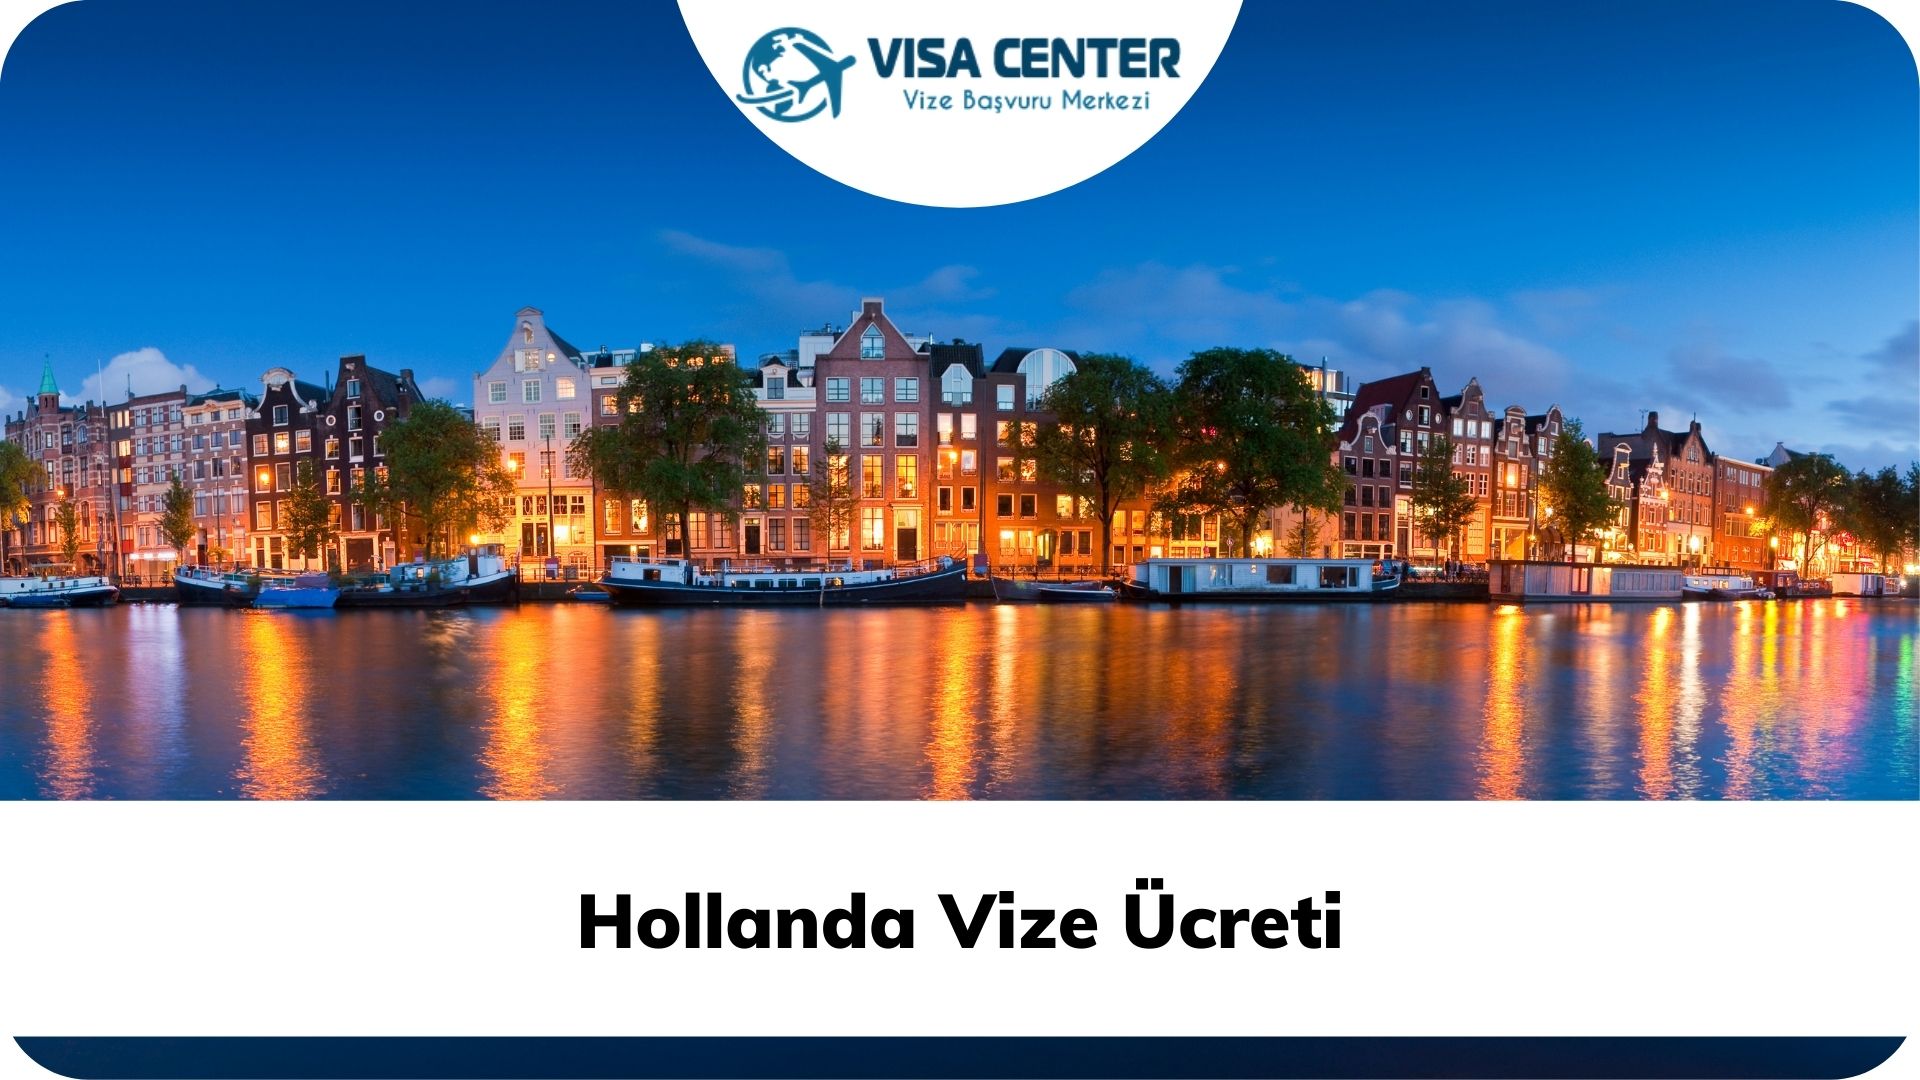 Hollanda Vize Ücreti